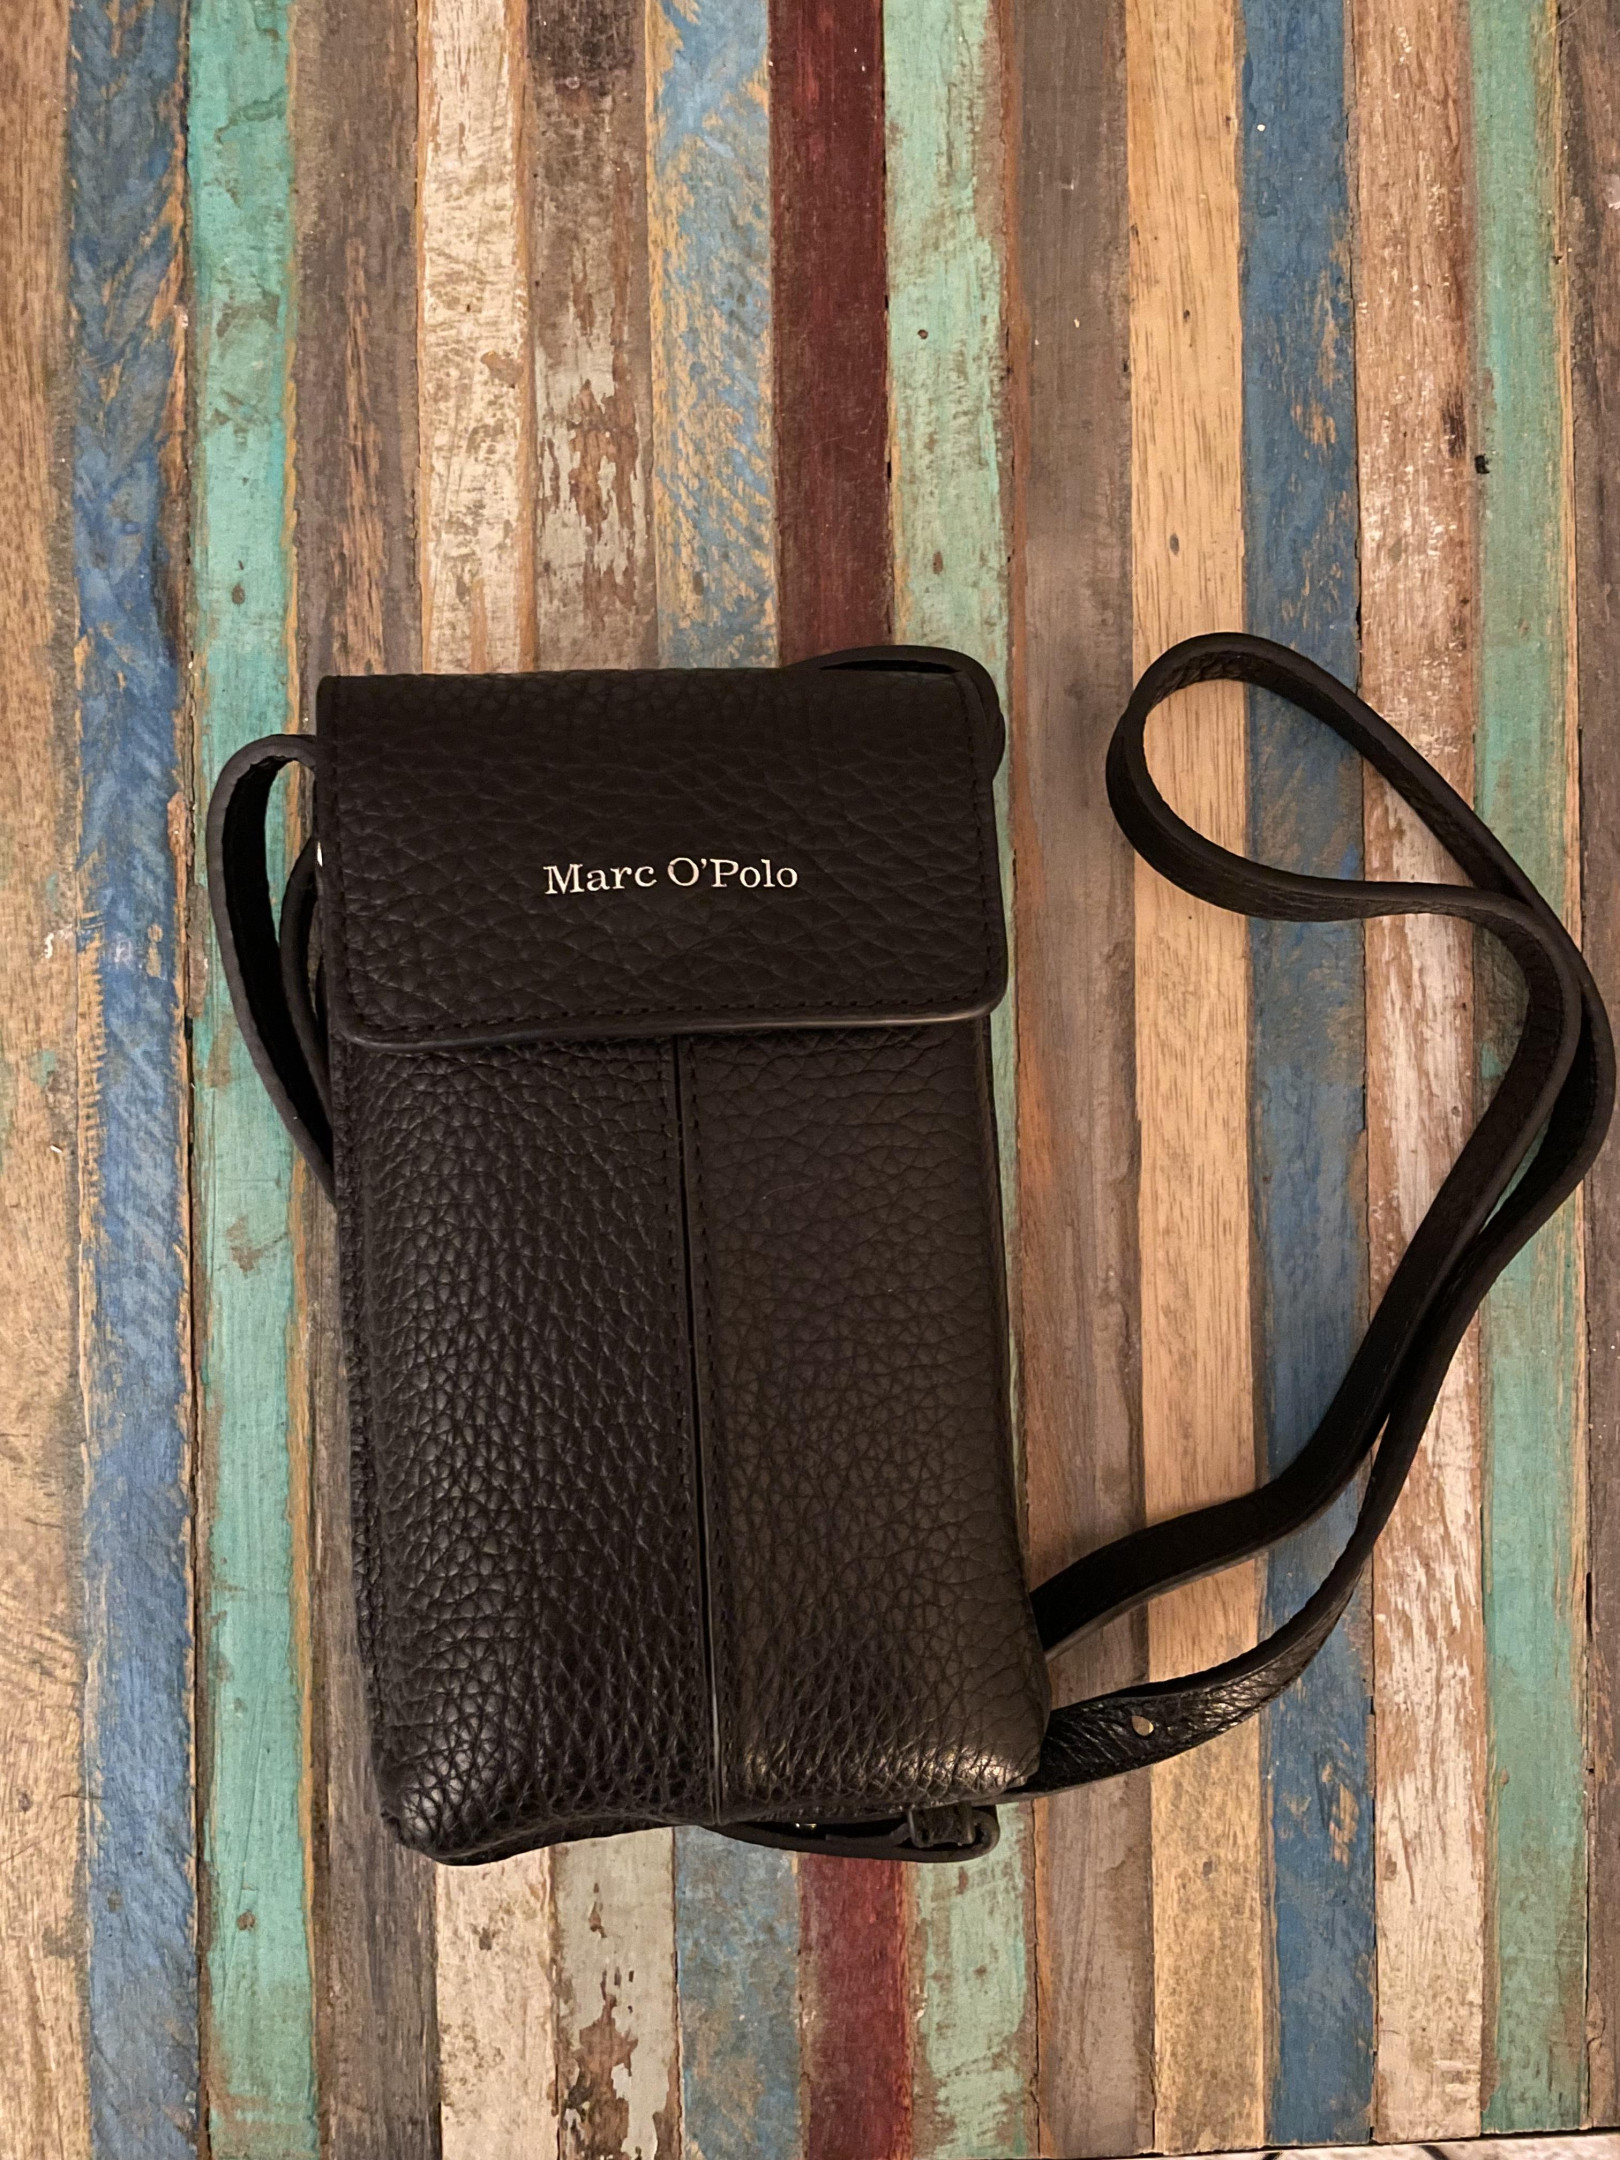 Marc O'Polo small black leather bag